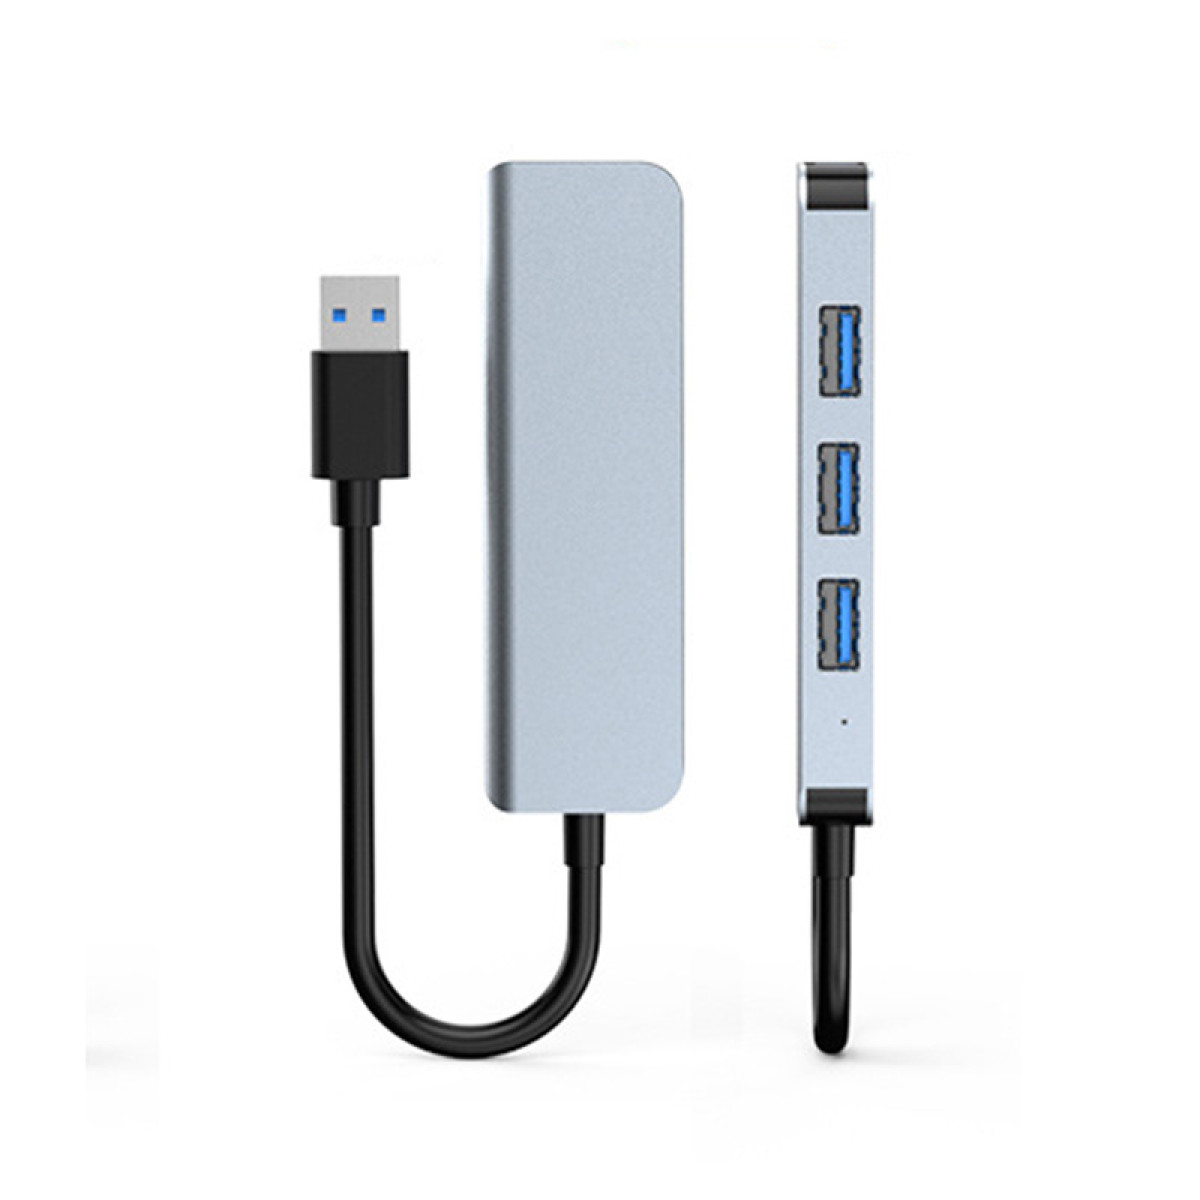 INF USB-Hub, USB2.0-Ports und USB3.0-Port 1 3 USB-Hub Silbergrau mit